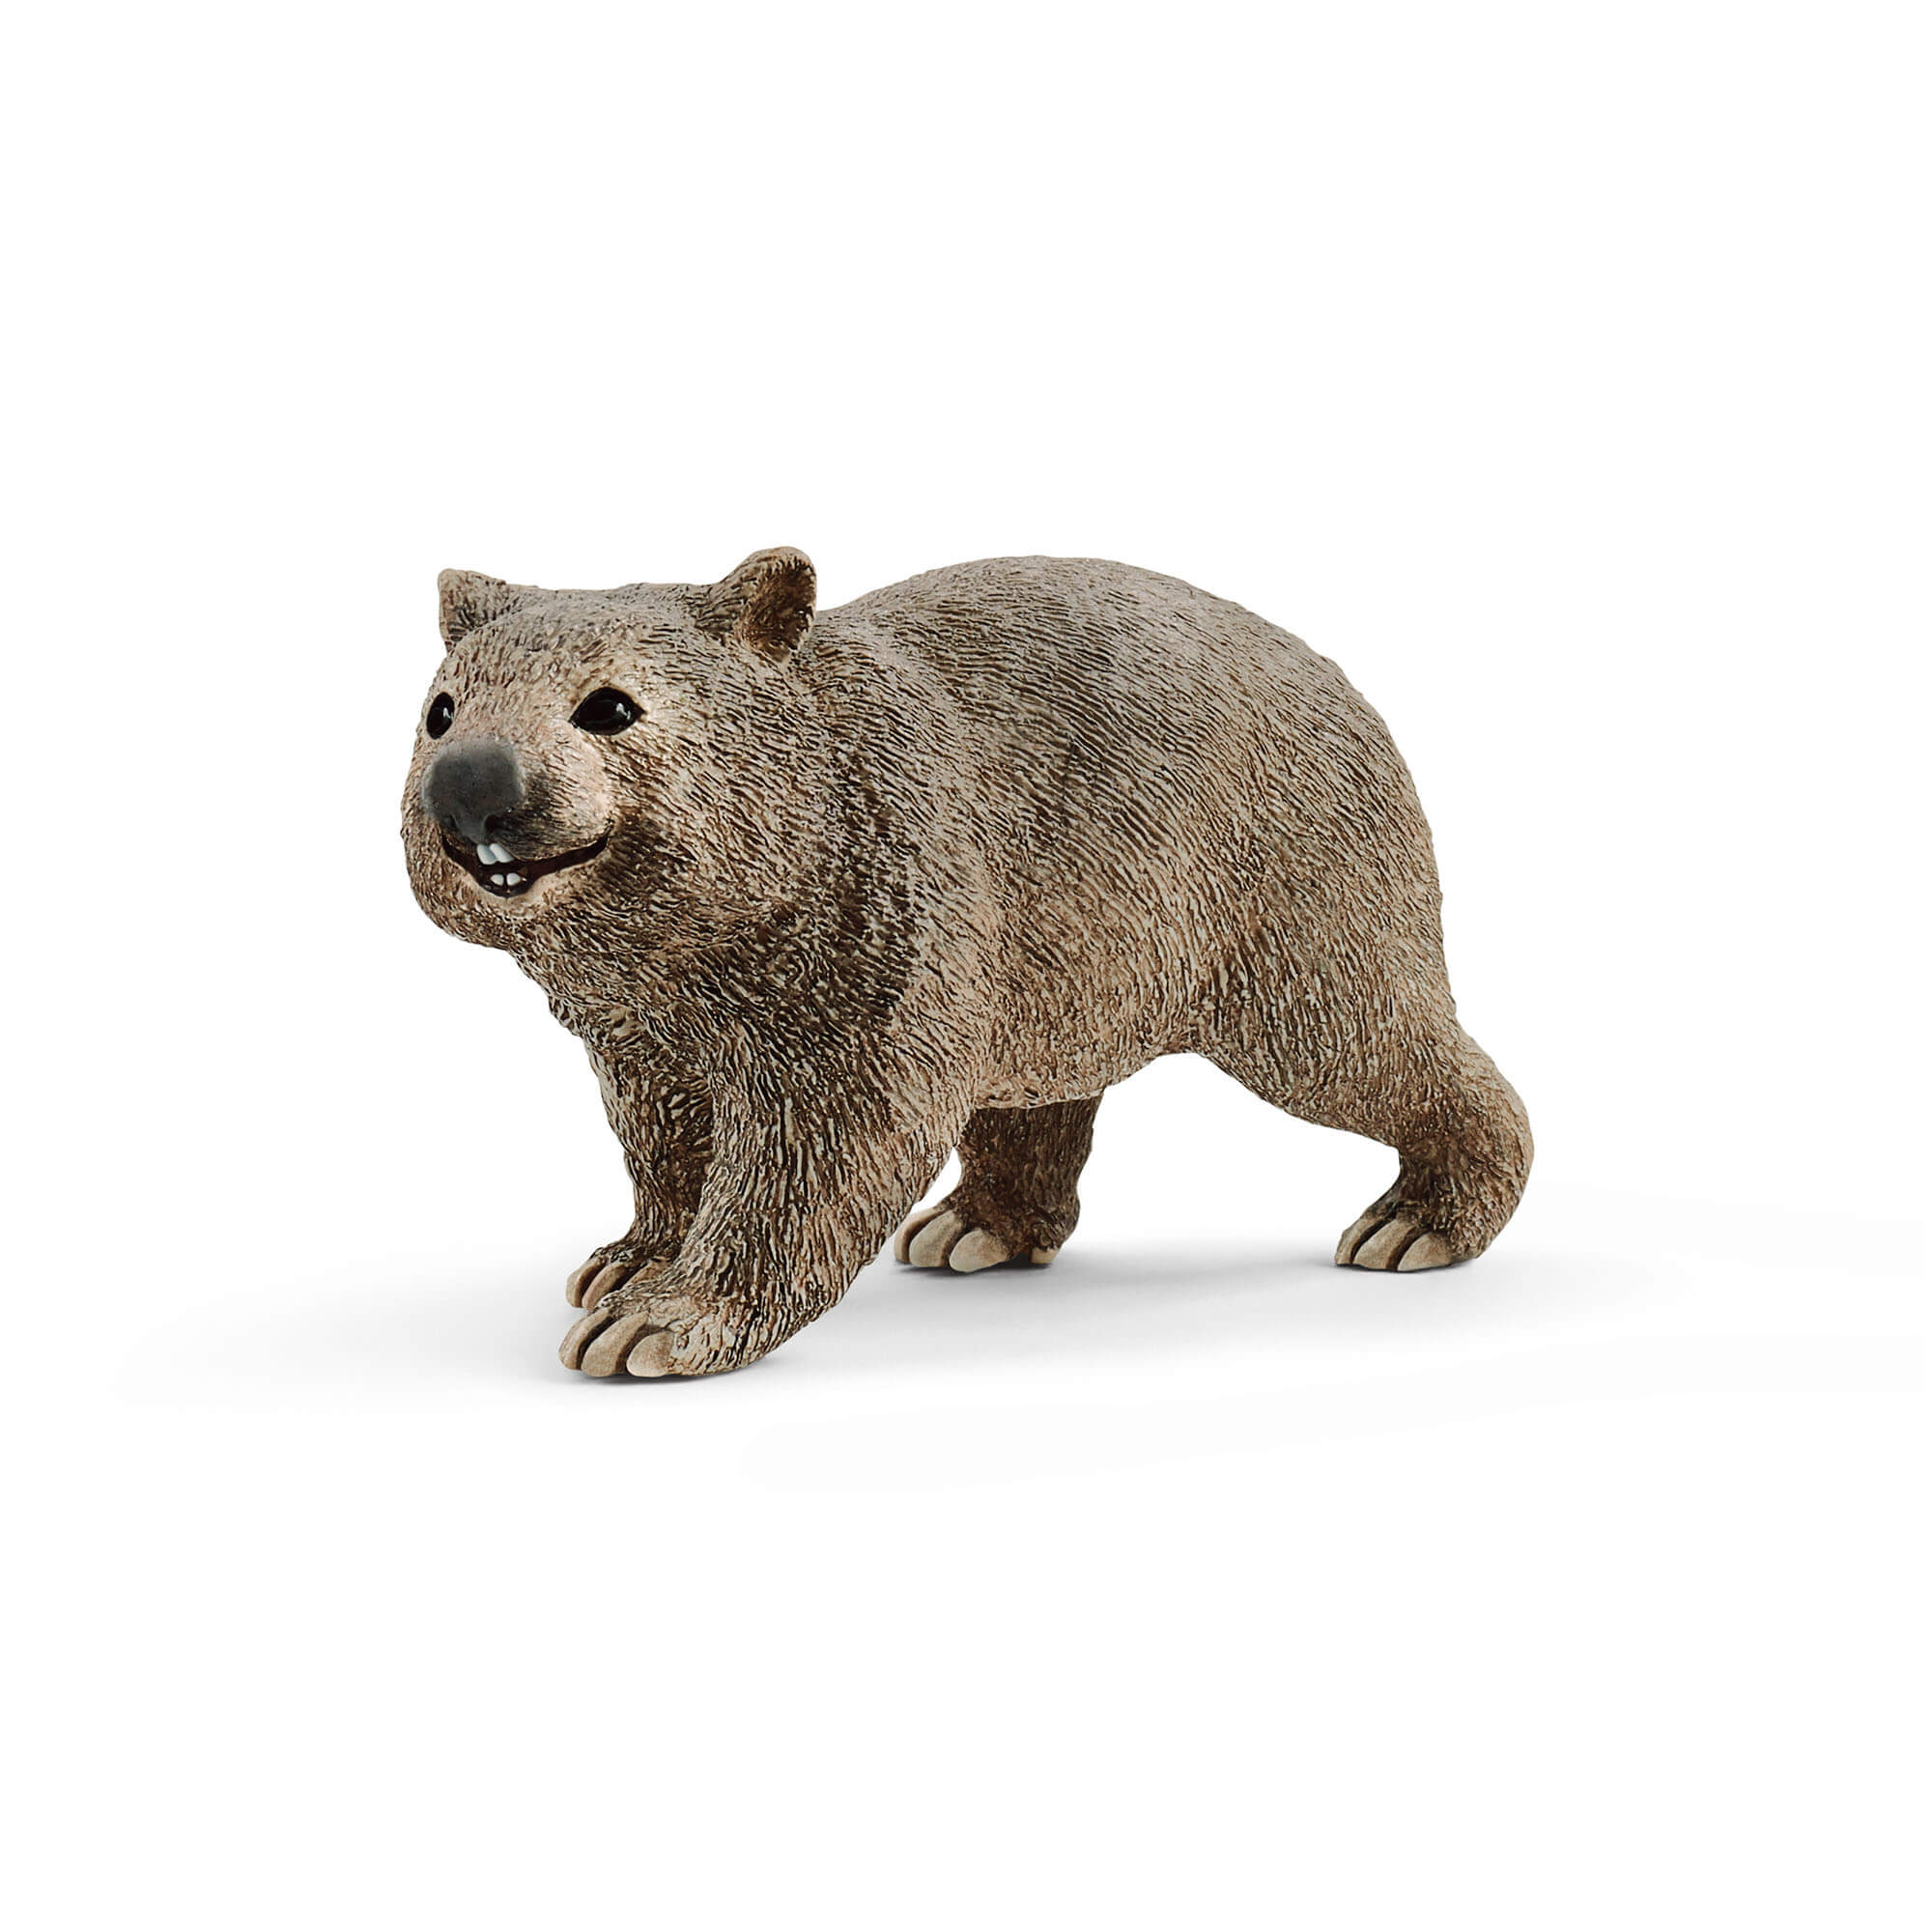 Schleich Wild Life Wombat Animal Figure